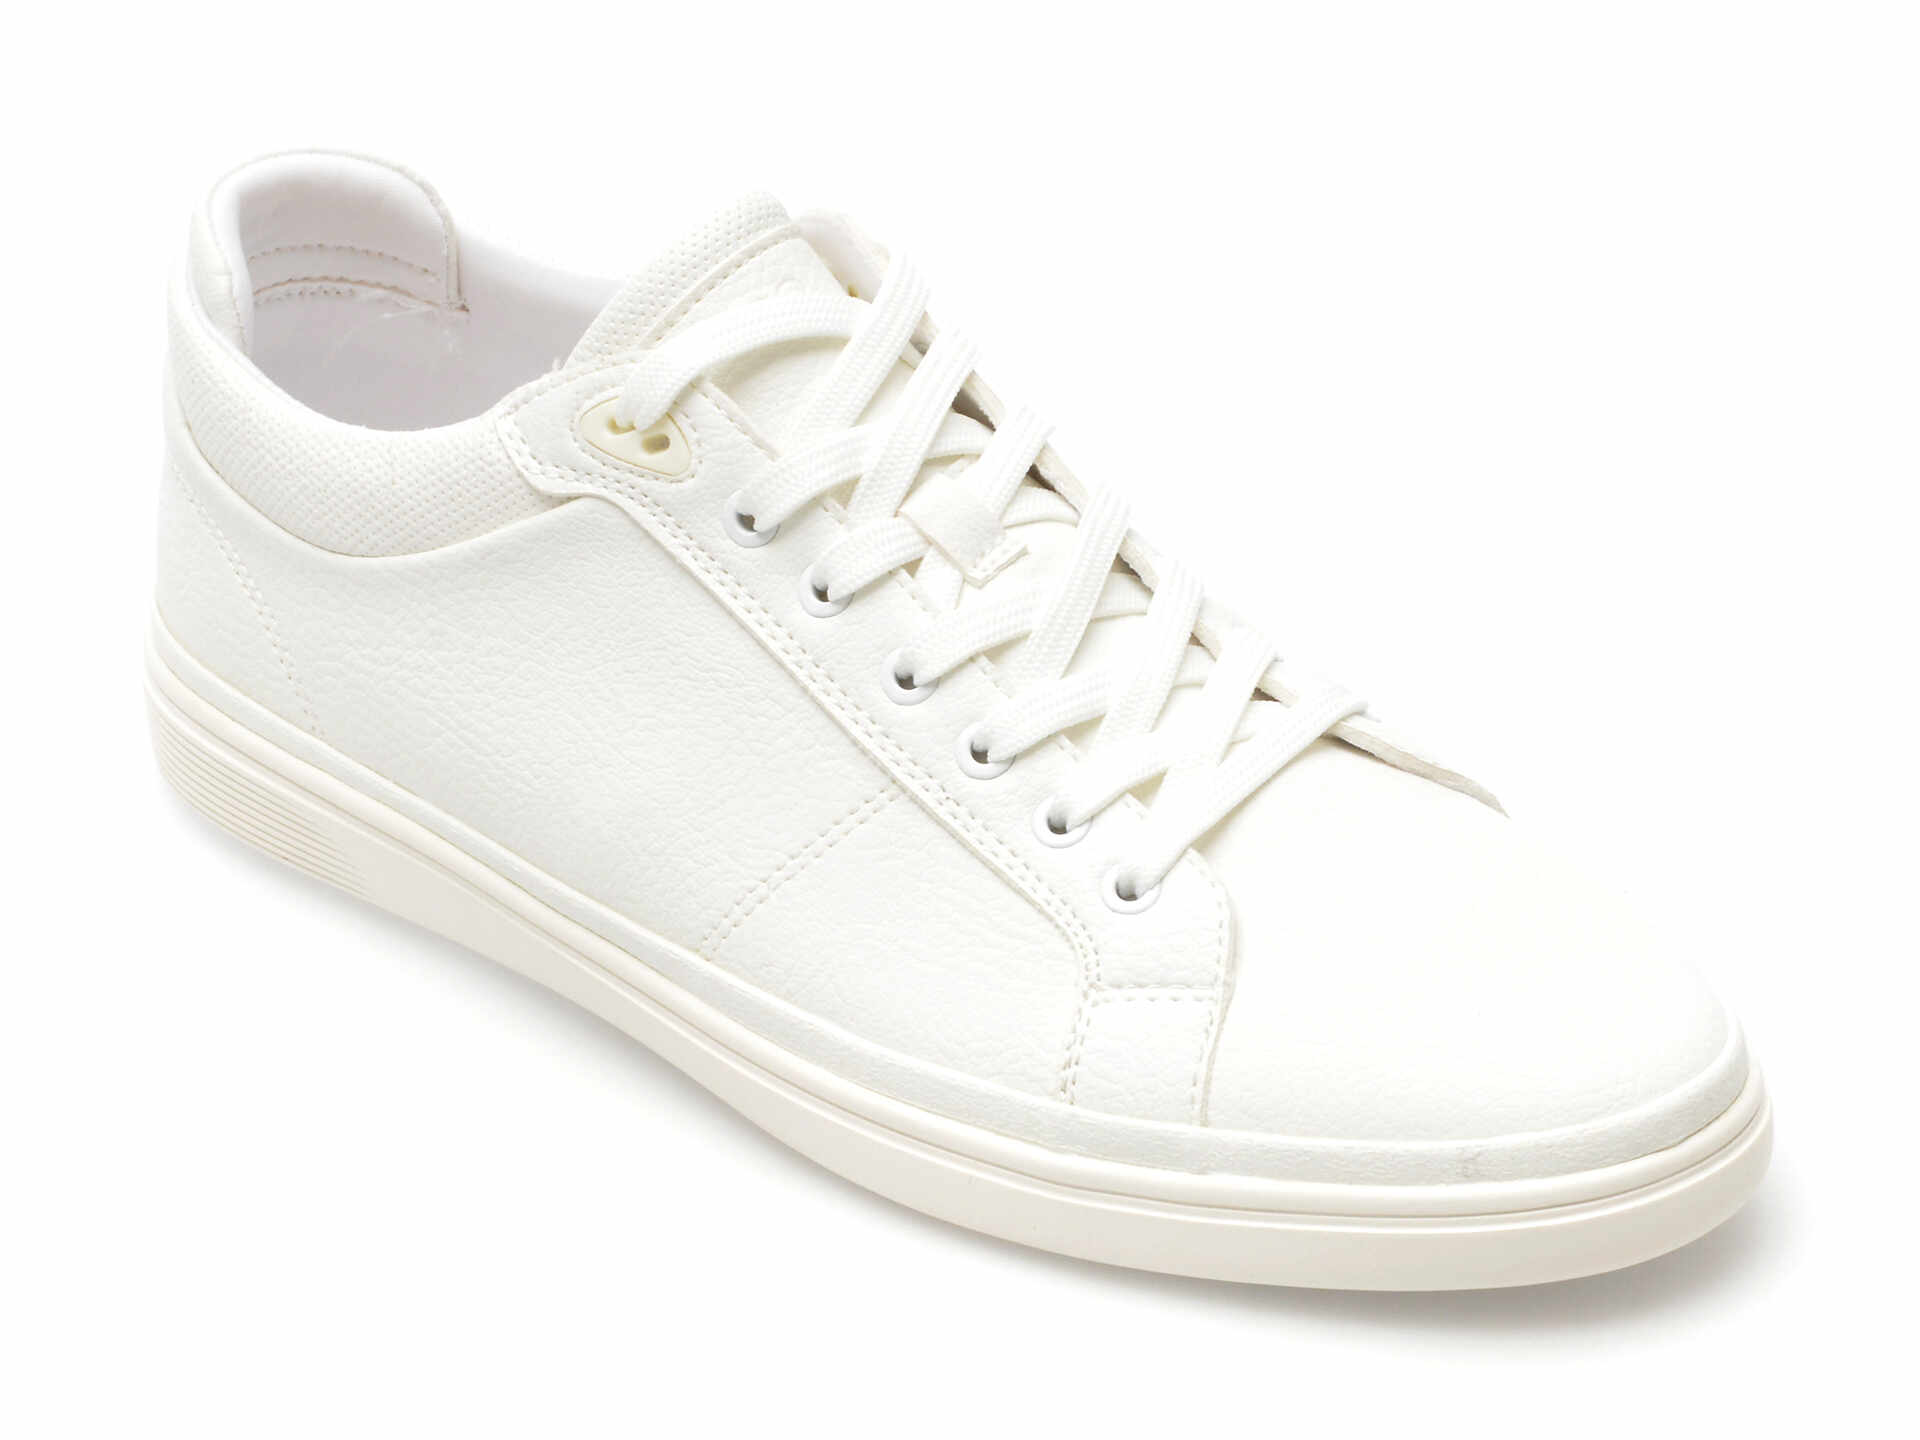 Pantofi ALDO albi, FINESPEC110, din piele ecologica